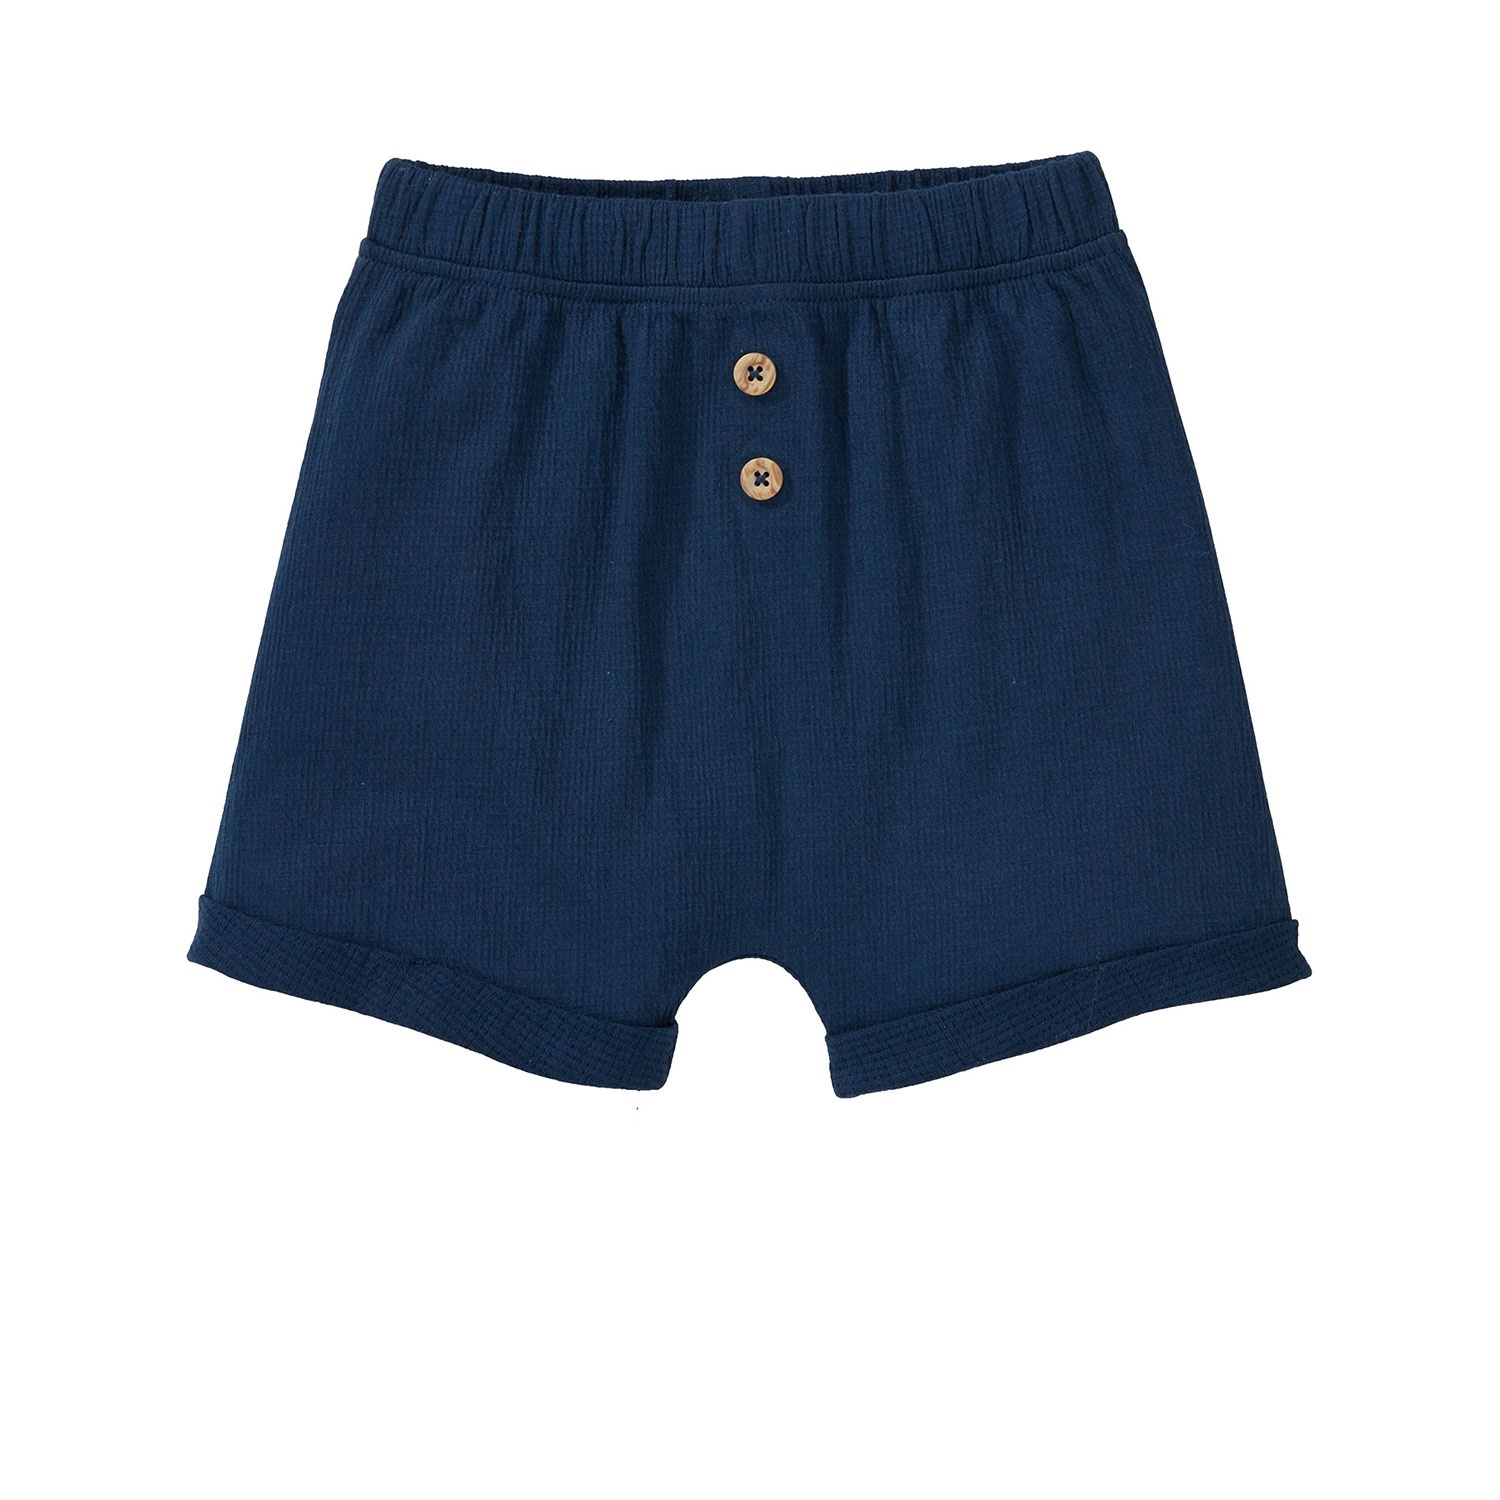 IMPIDIMPI Baby Sommer-Shorts